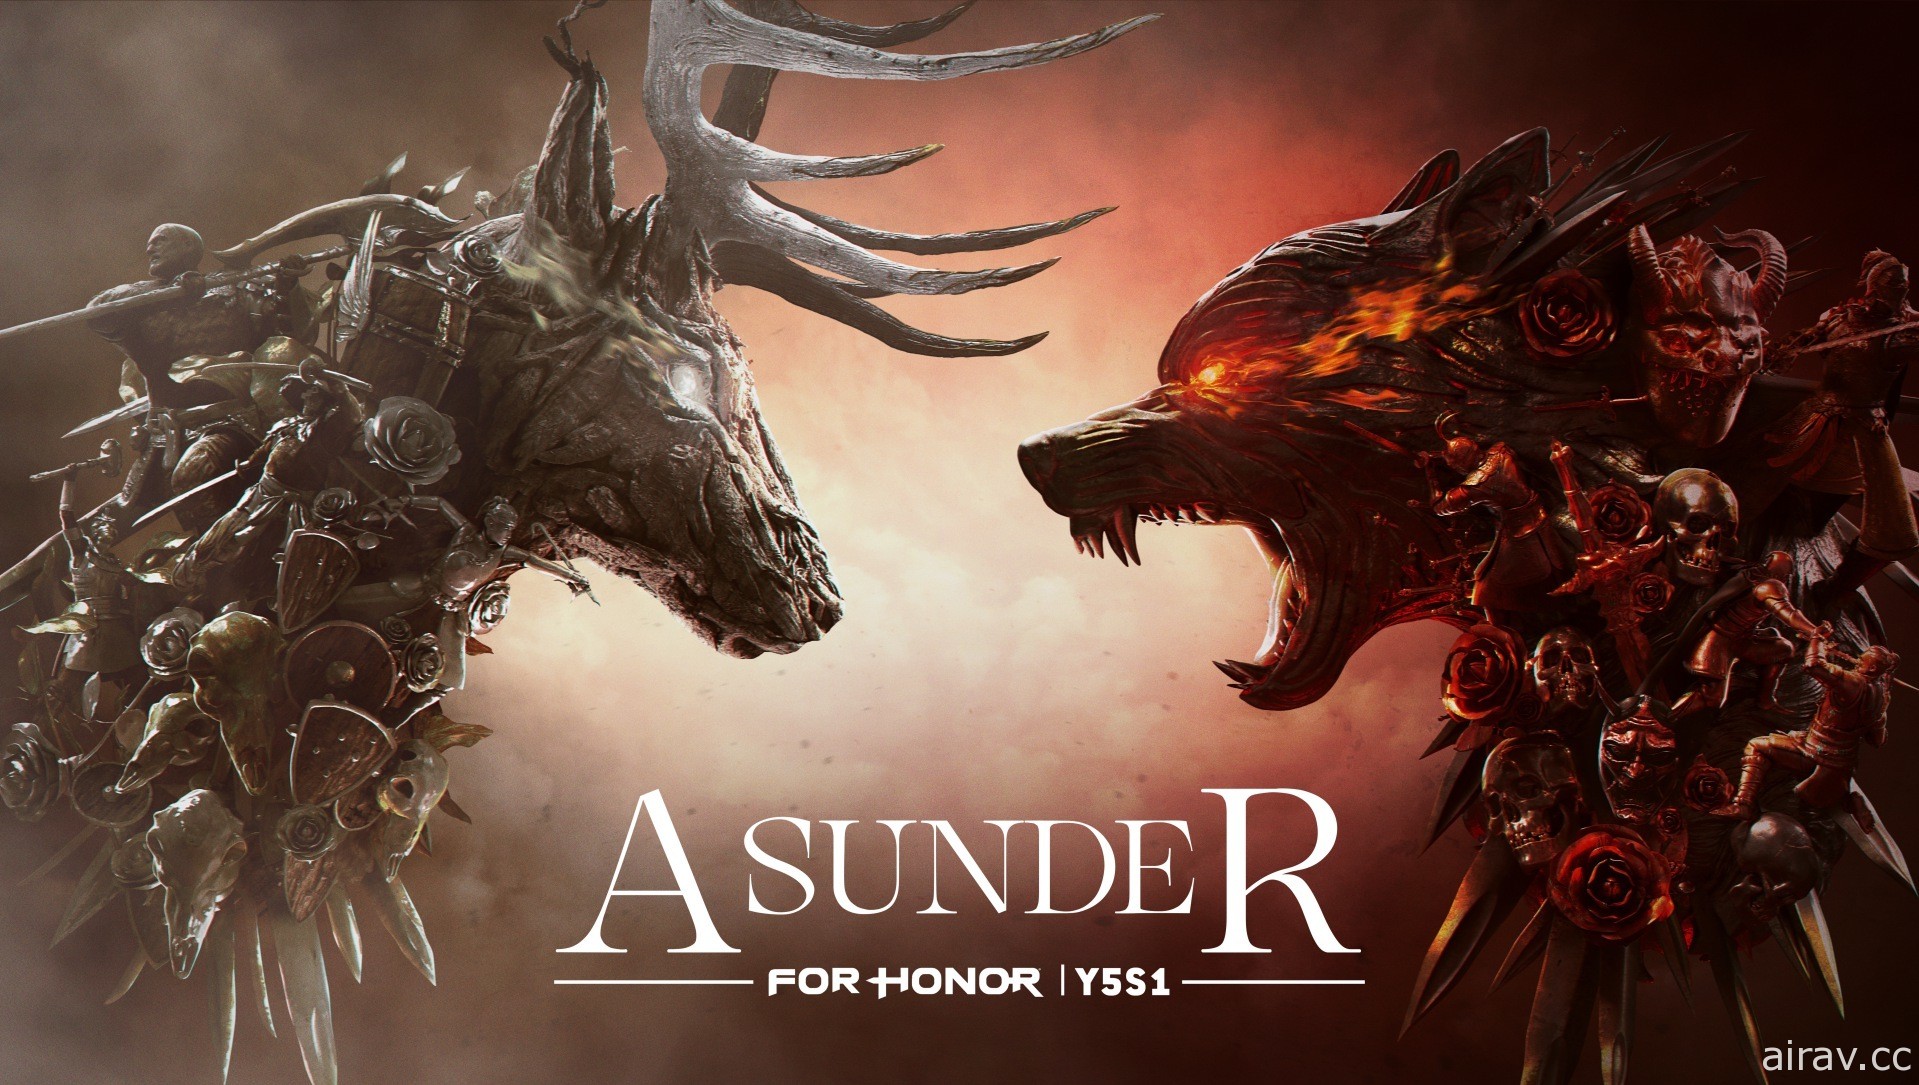 《荣耀战魂》第 5 年第 1 季“Asunder”3 月 11 日推出 带来全新游戏模式